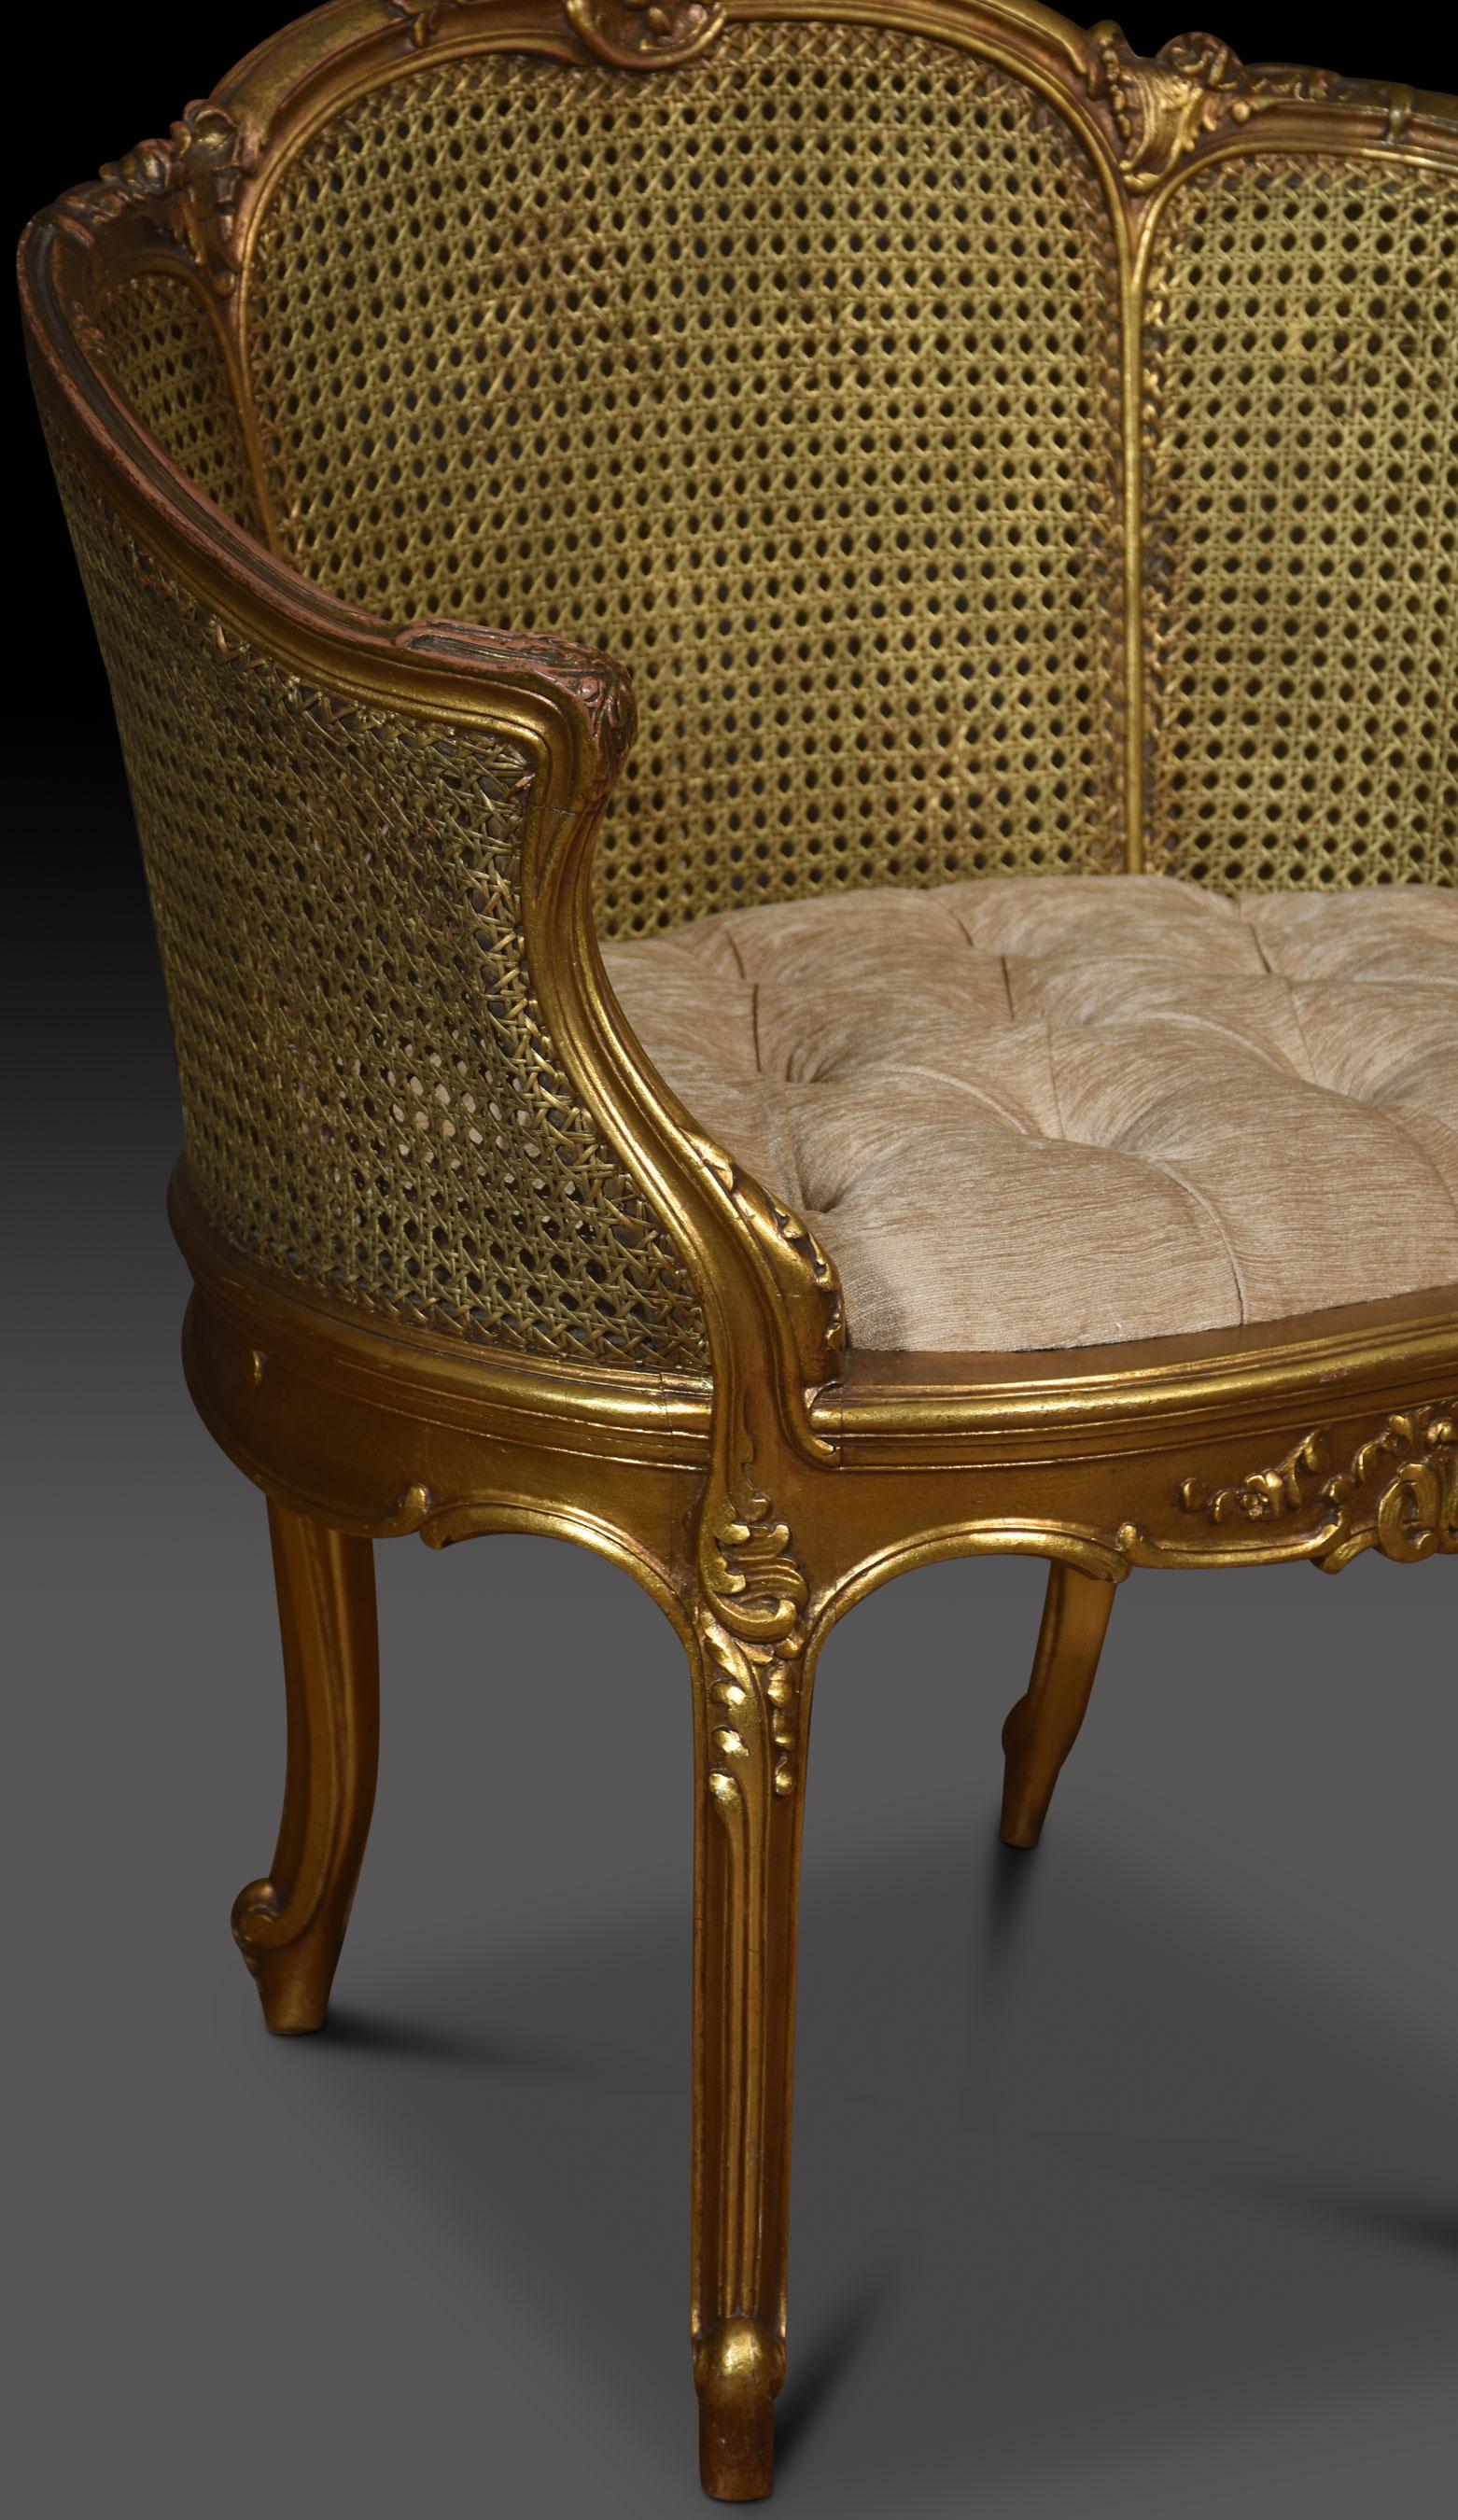 Paire de fauteuils baignoires de style Louis XVI, le rail sculpté et doré dans la manière typique de l'époque, le cadre avec un motif répétitif de feuilles détaillées. Le dossier et les accoudoirs en bergère sont flanqués d'accoudoirs en forme de